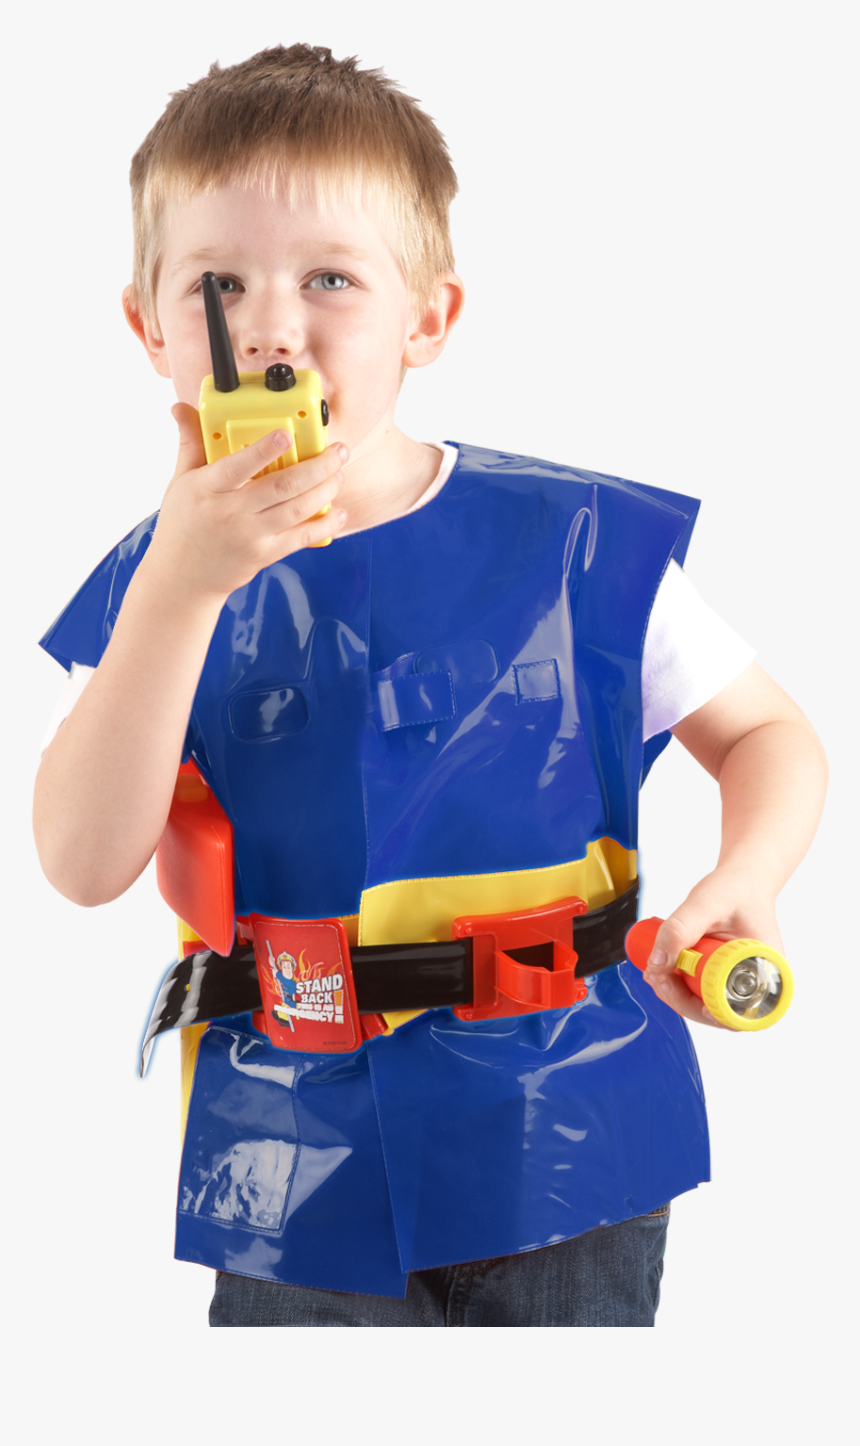 Fireman Sam Toys Utility Belt - Fireman Sam, HD Png Download, Free Download